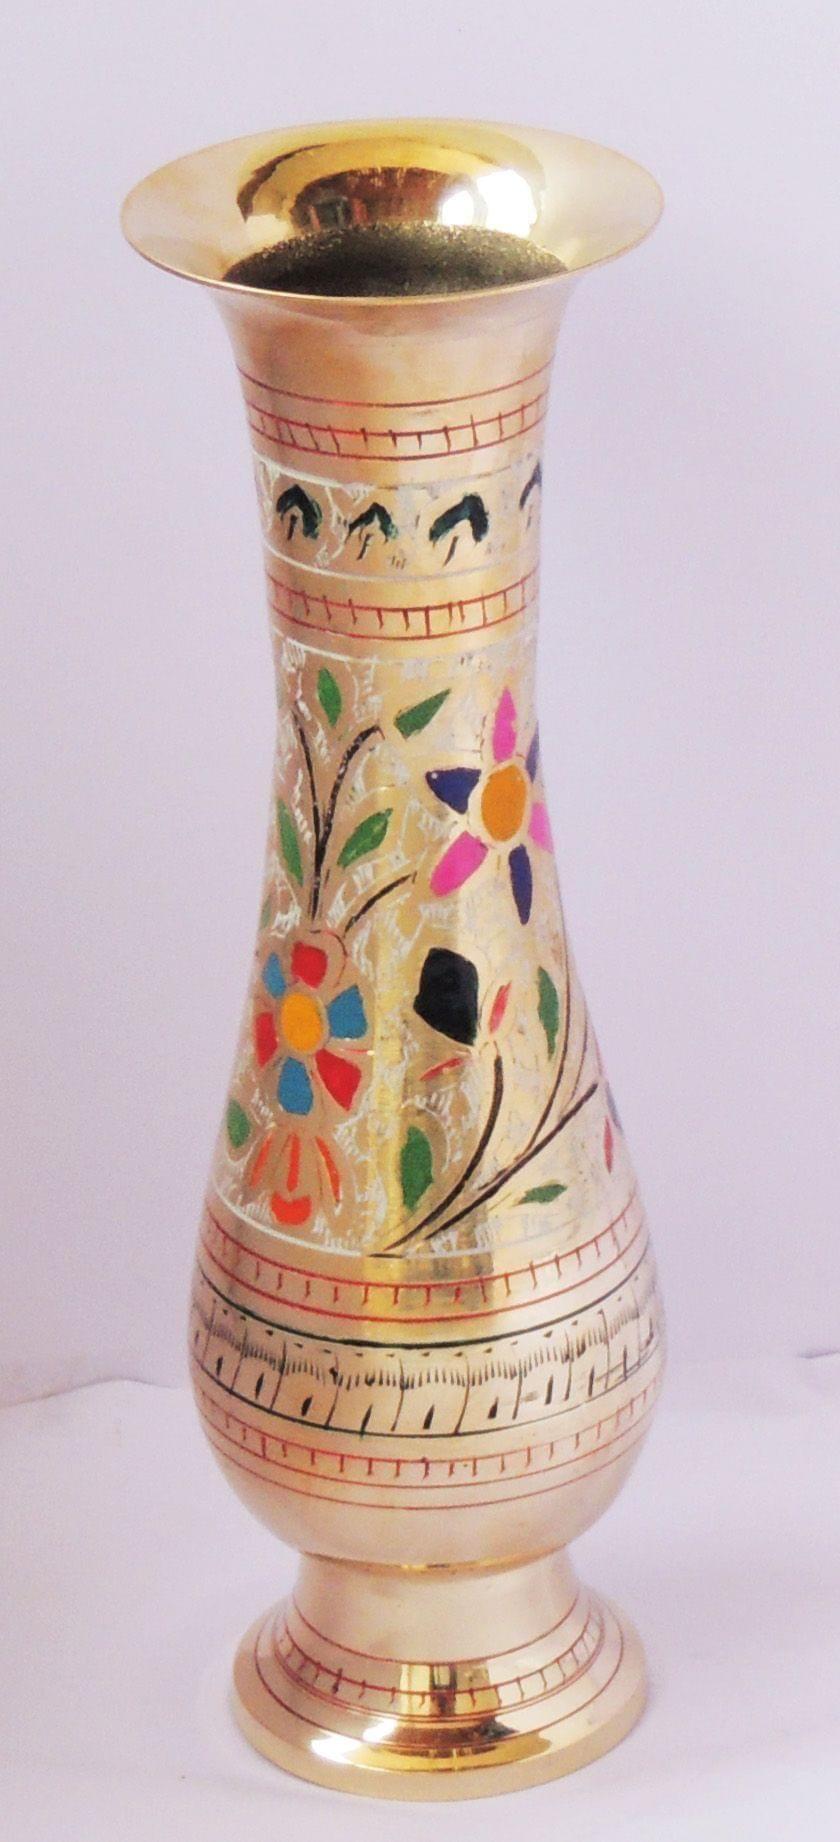 Brass Home & Garden Decorative Flower Pot , Vase - 3.5*9.5*11 inch (F659 G)